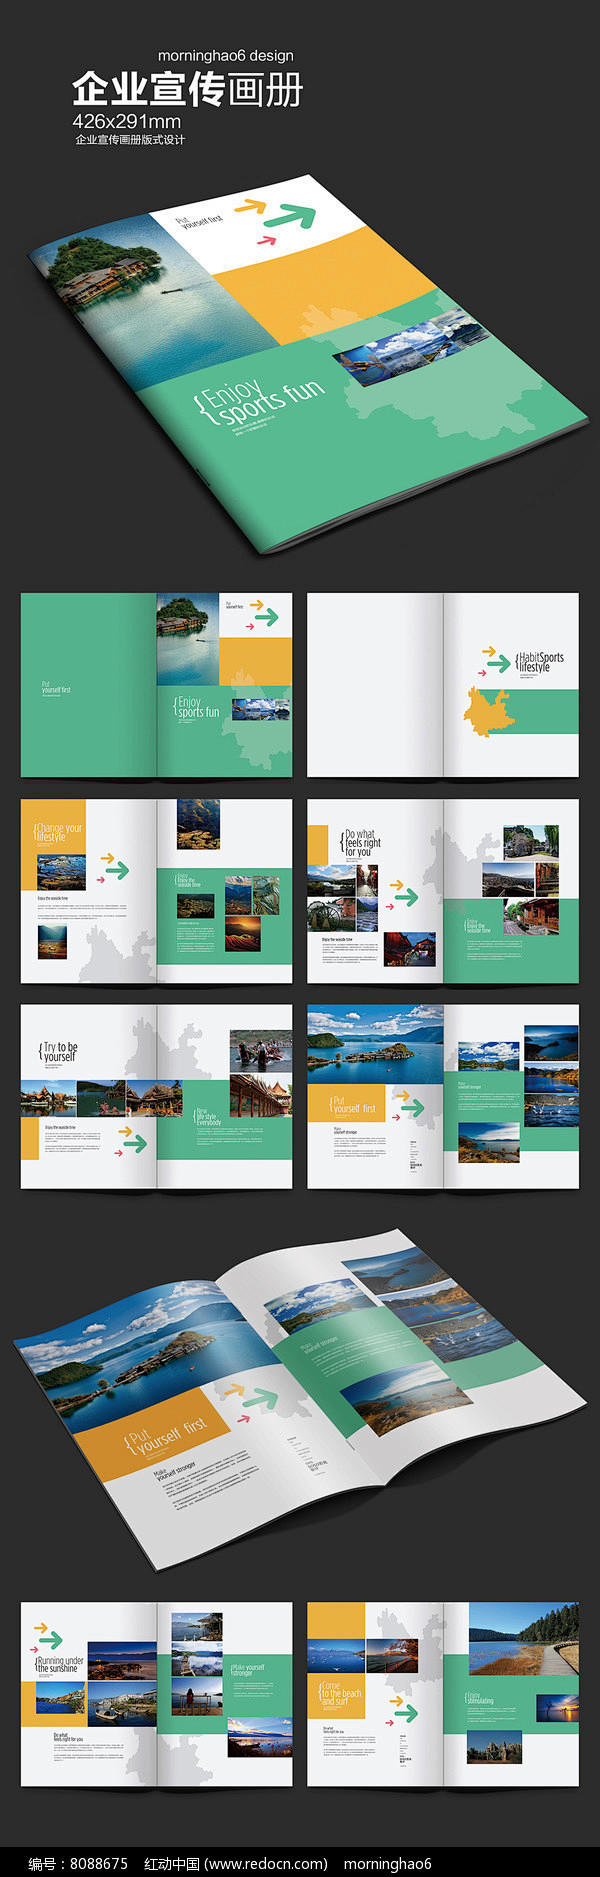 元素系列长方形云南旅游画册图片旅游画册旅游画册模板旅游画册设计